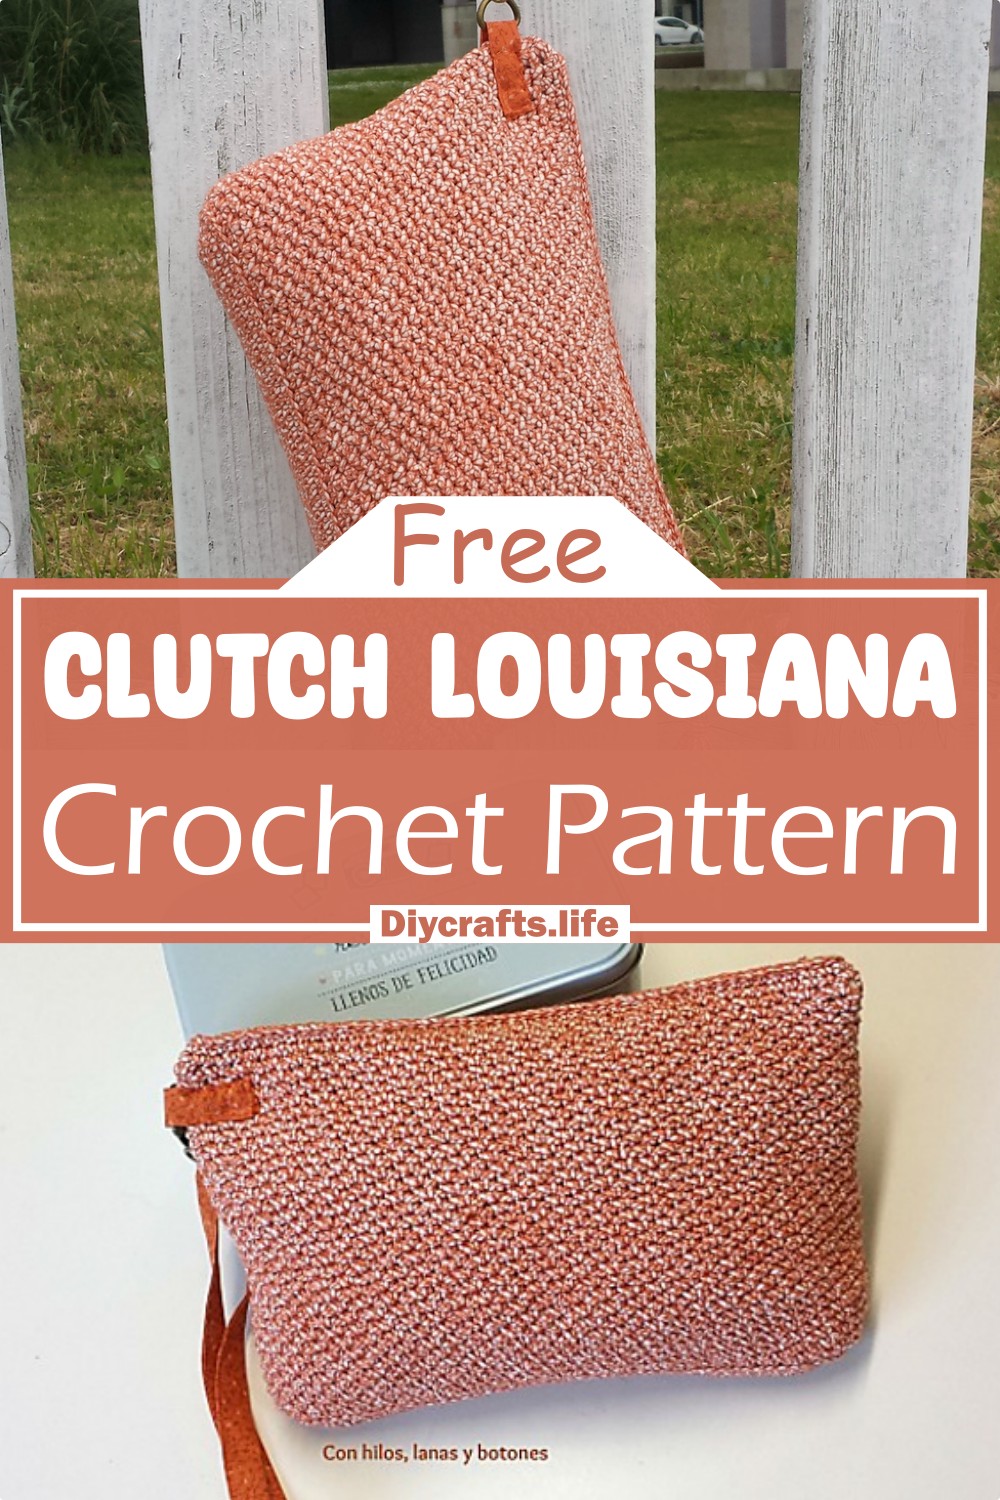 Crochet Clutch Louisiana Pattern